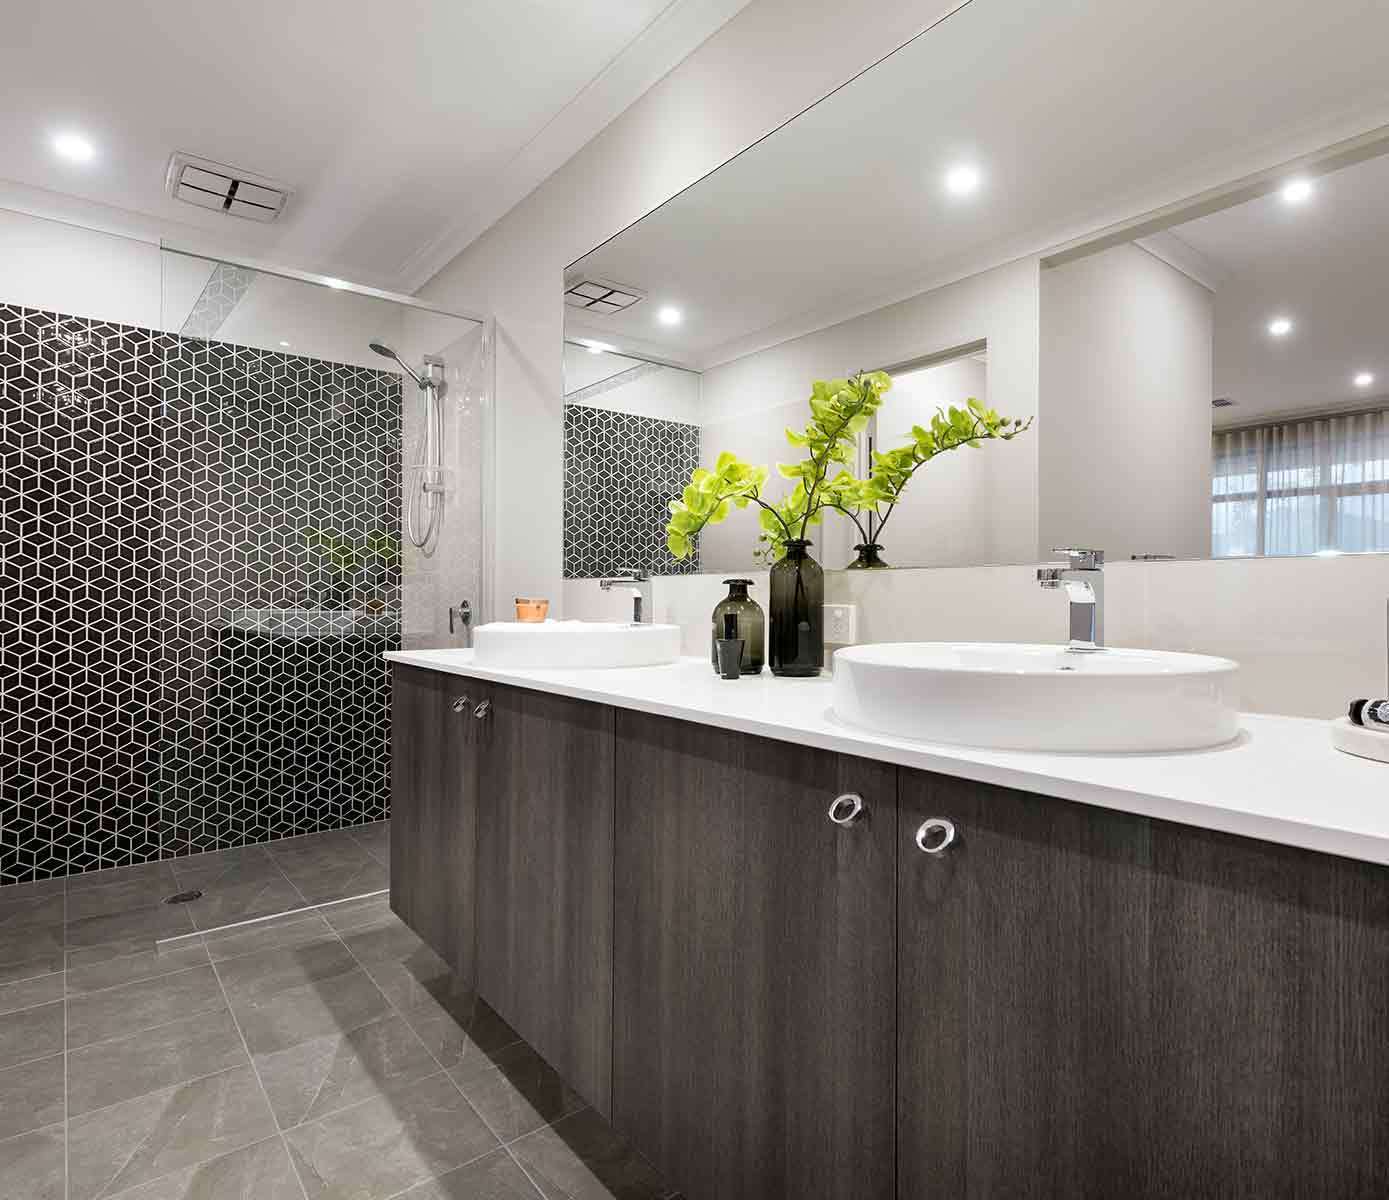 https://www.reece.com.au/blueprint/assets/images/1-blueprint-styling-open-house-light-and-open-freestanding-bath.jpg